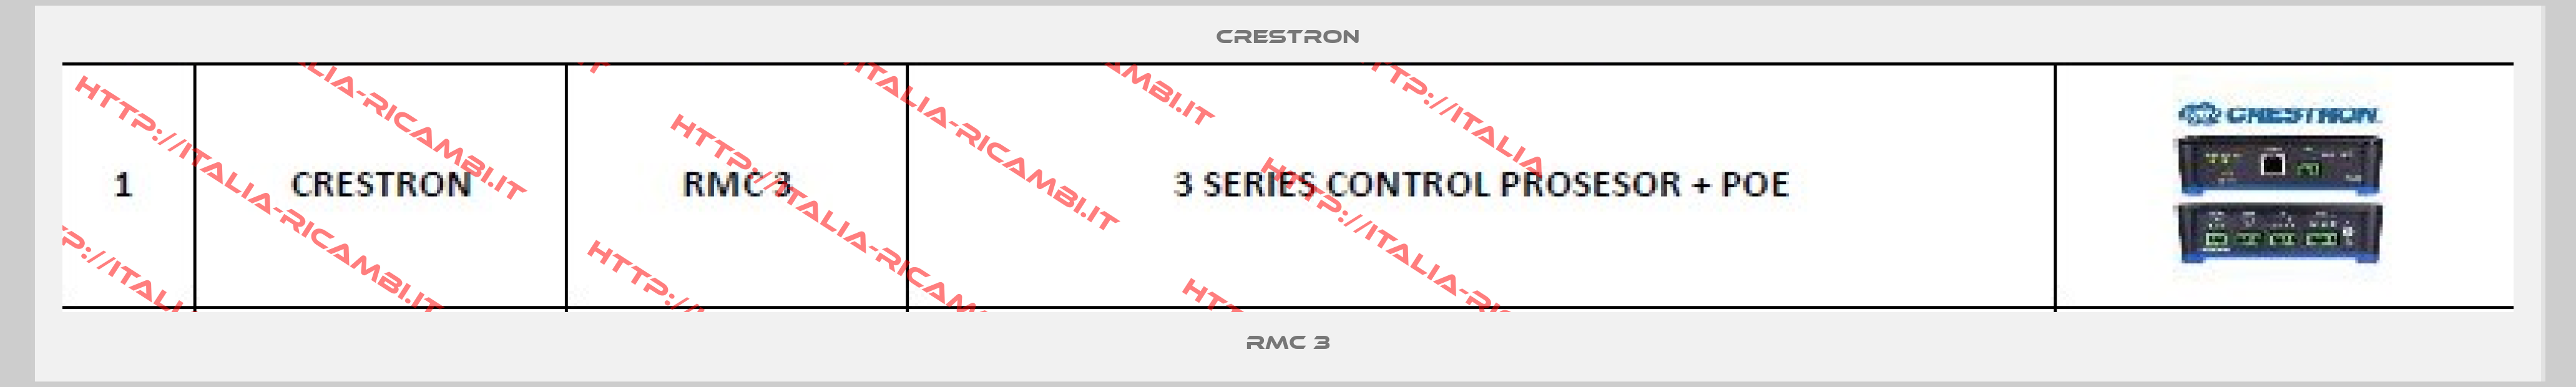 Crestron-RMC 3